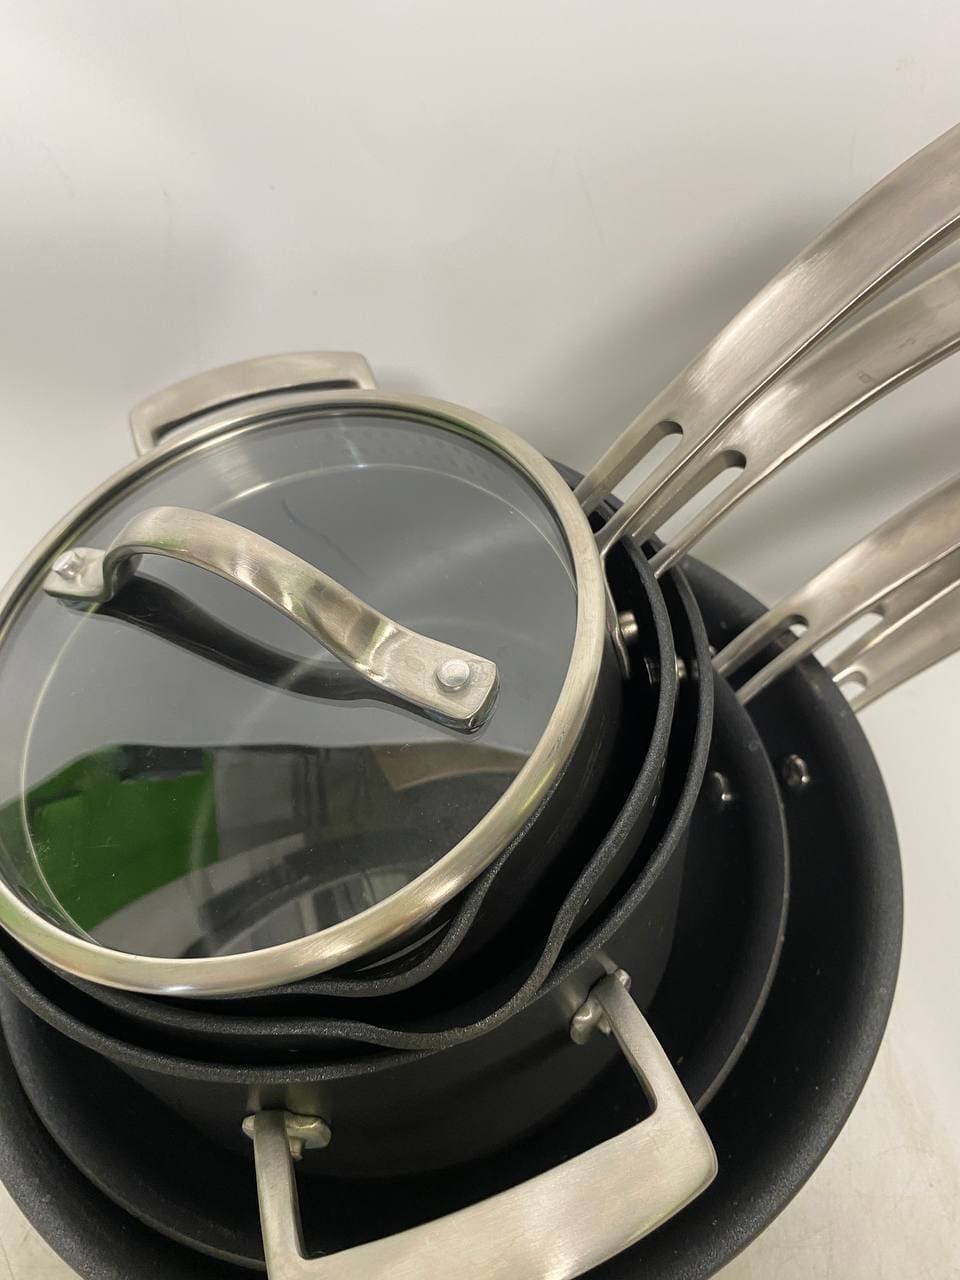 Kirkland Signature 15 Piece Hard Anodized Aluminum Cookware Set Item 483212  Reviews –